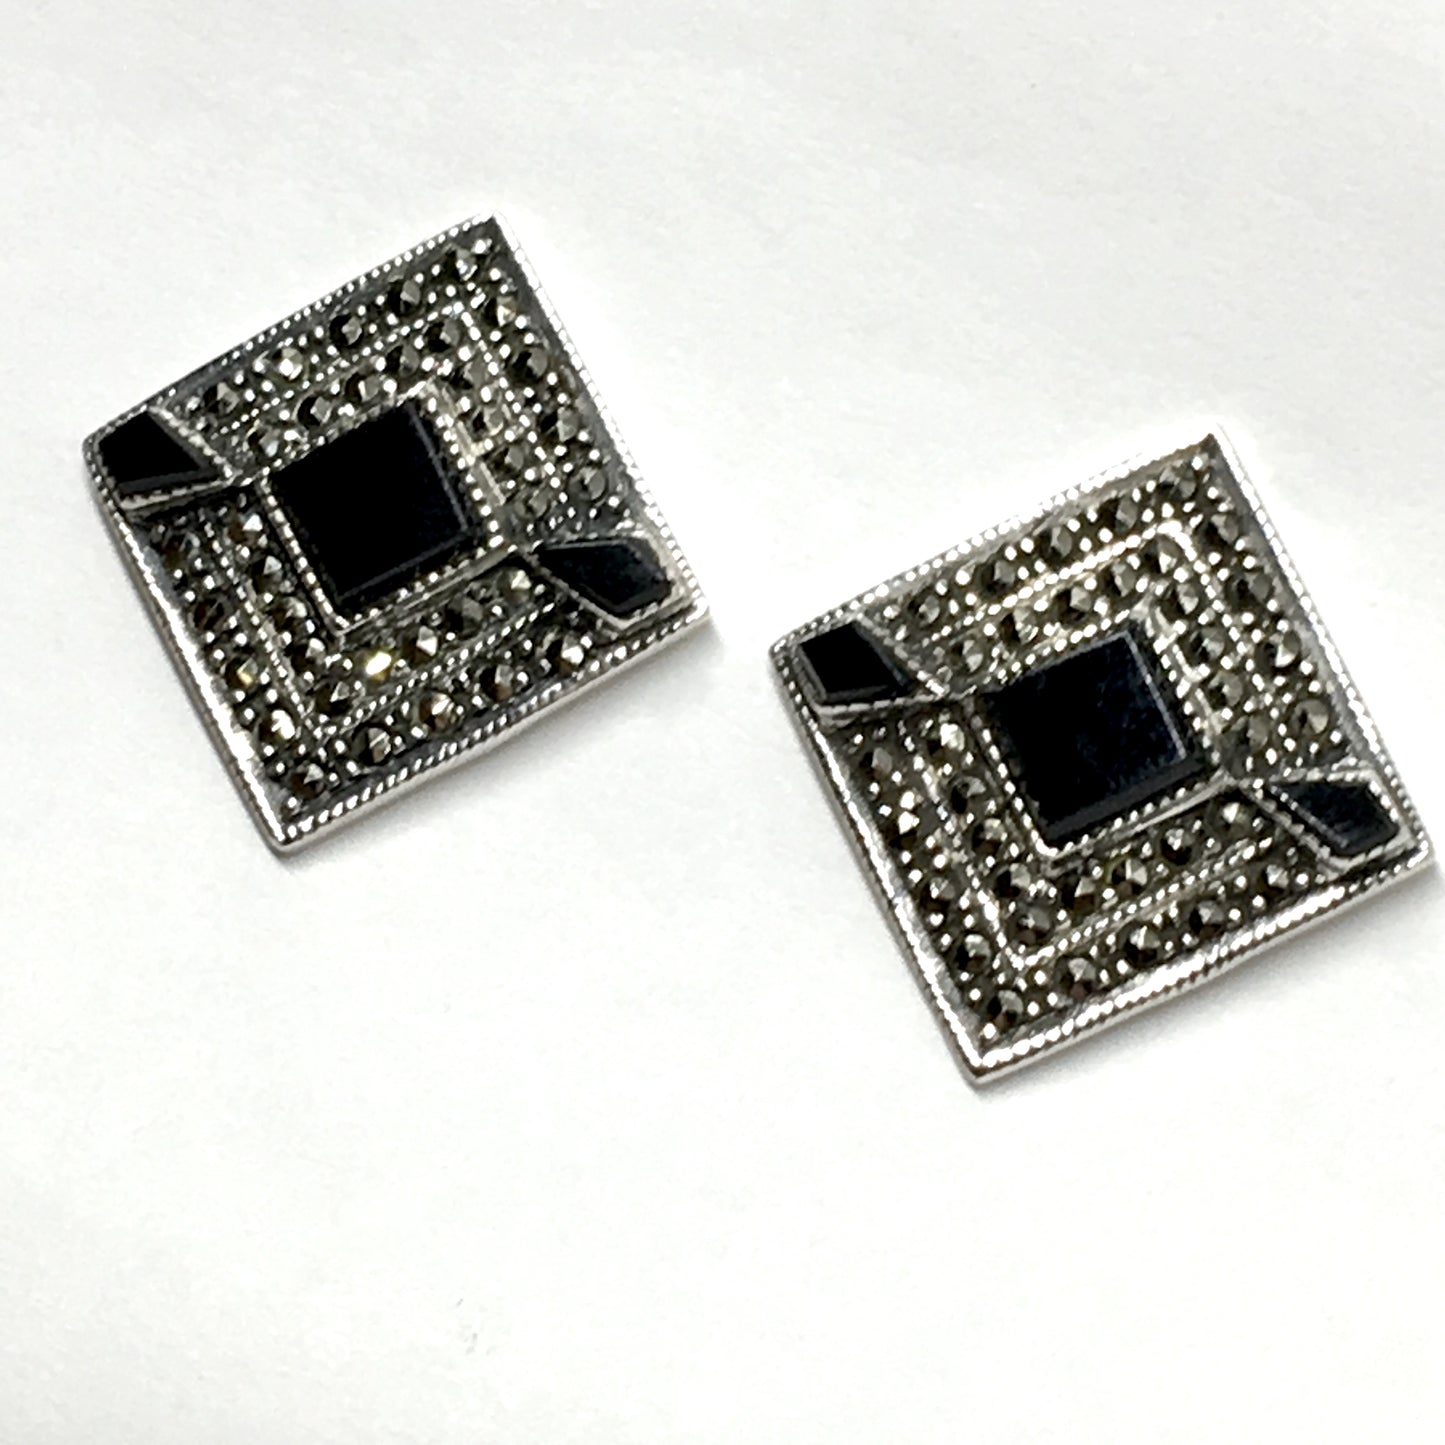 Earrings Womens - used Sterling Silver Black Marcasite Stone Diamond Design Drop Earrings | Blingschlingers Jewelry online in USA